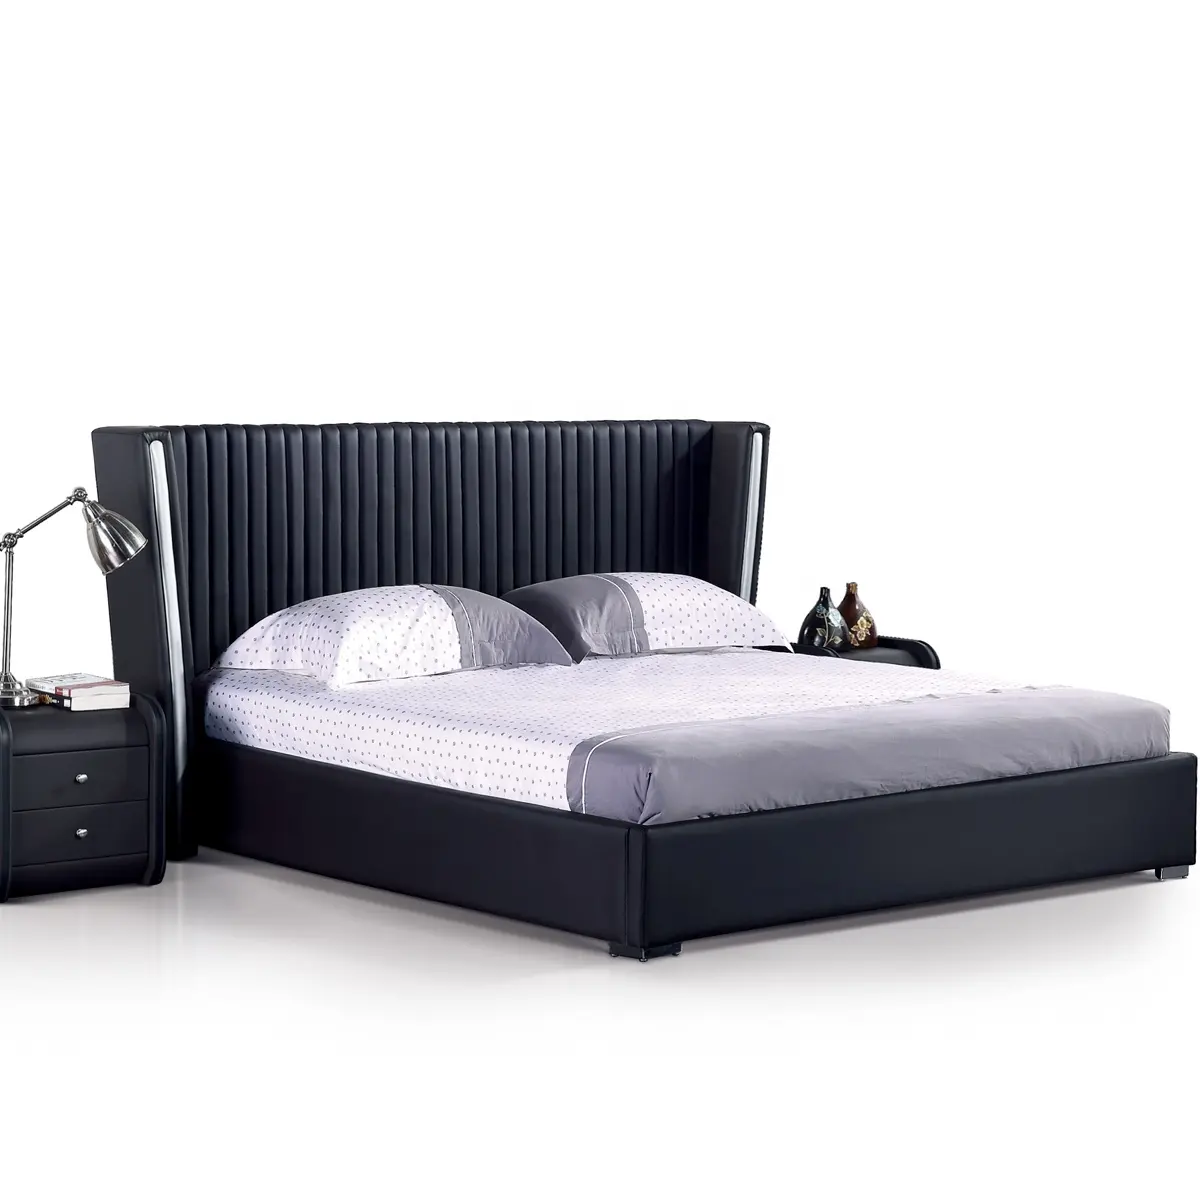 Mobili da camera da letto classici con struttura del letto queen size in pelle dal design moderno